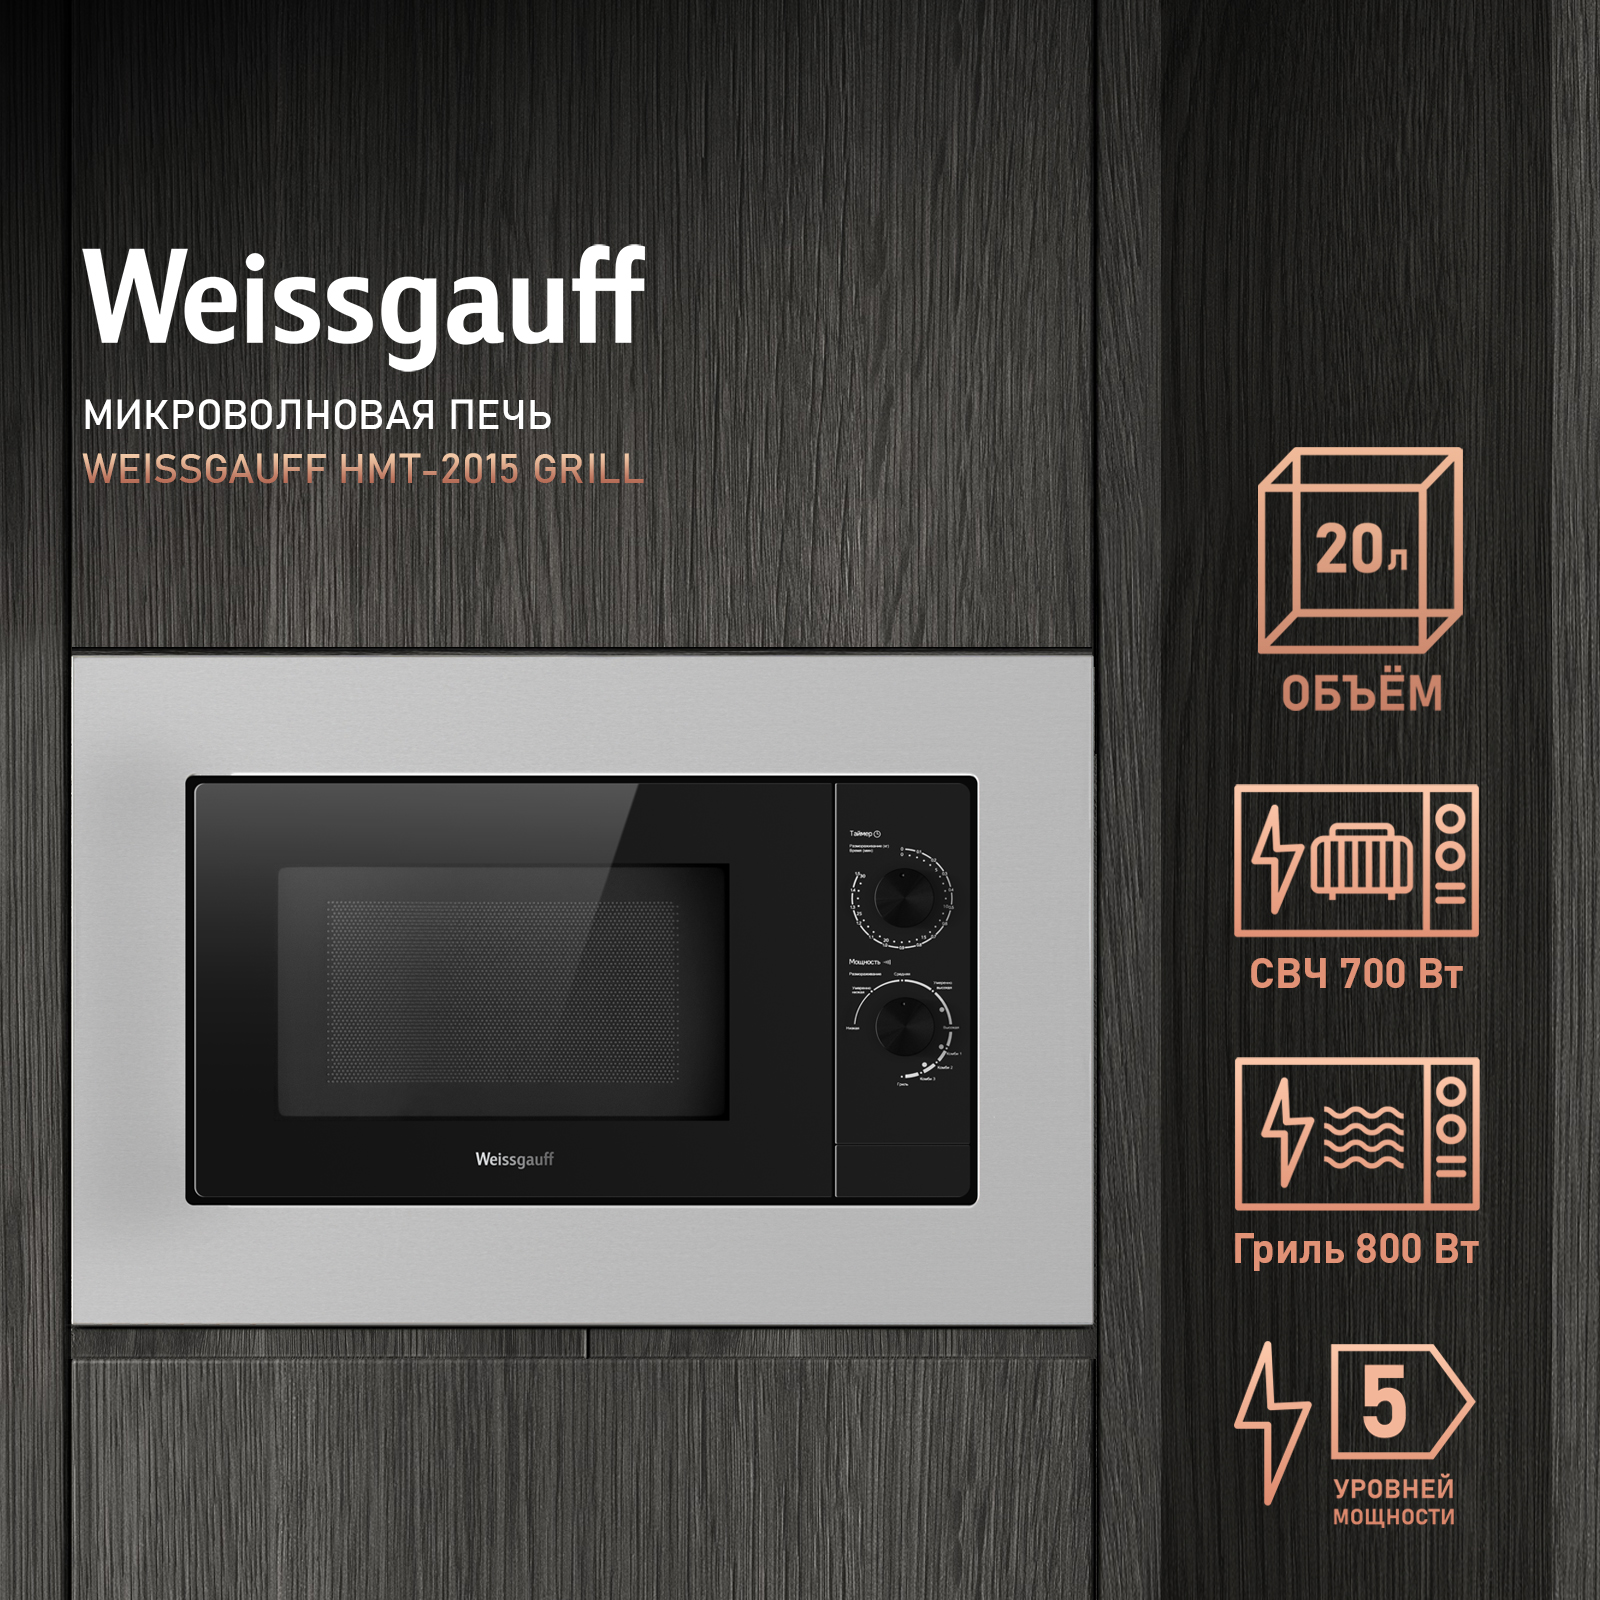 Встраиваемая микроволновая печь Weissgauff HMT-2015 Grill серебристая микроволновая печь с грилем weissgauff bmwo 209 pdb